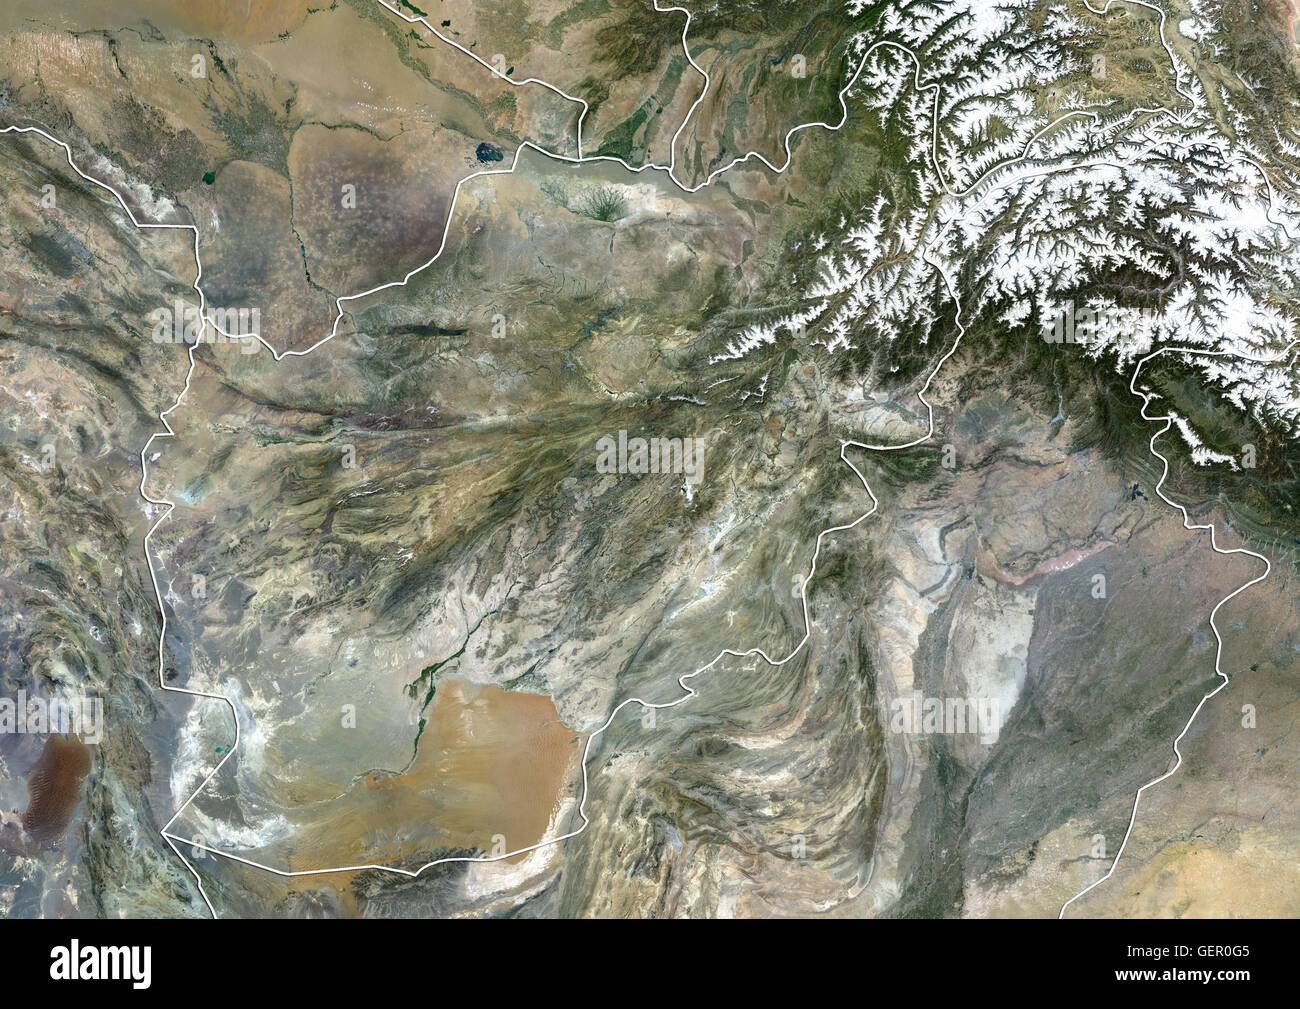 Vista satellitare dell'Afghanistan (con i confini del paese). Questa immagine è stata elaborata sulla base dei dati acquisiti dal satellite Landsat 8 satellite in 2014. Foto Stock